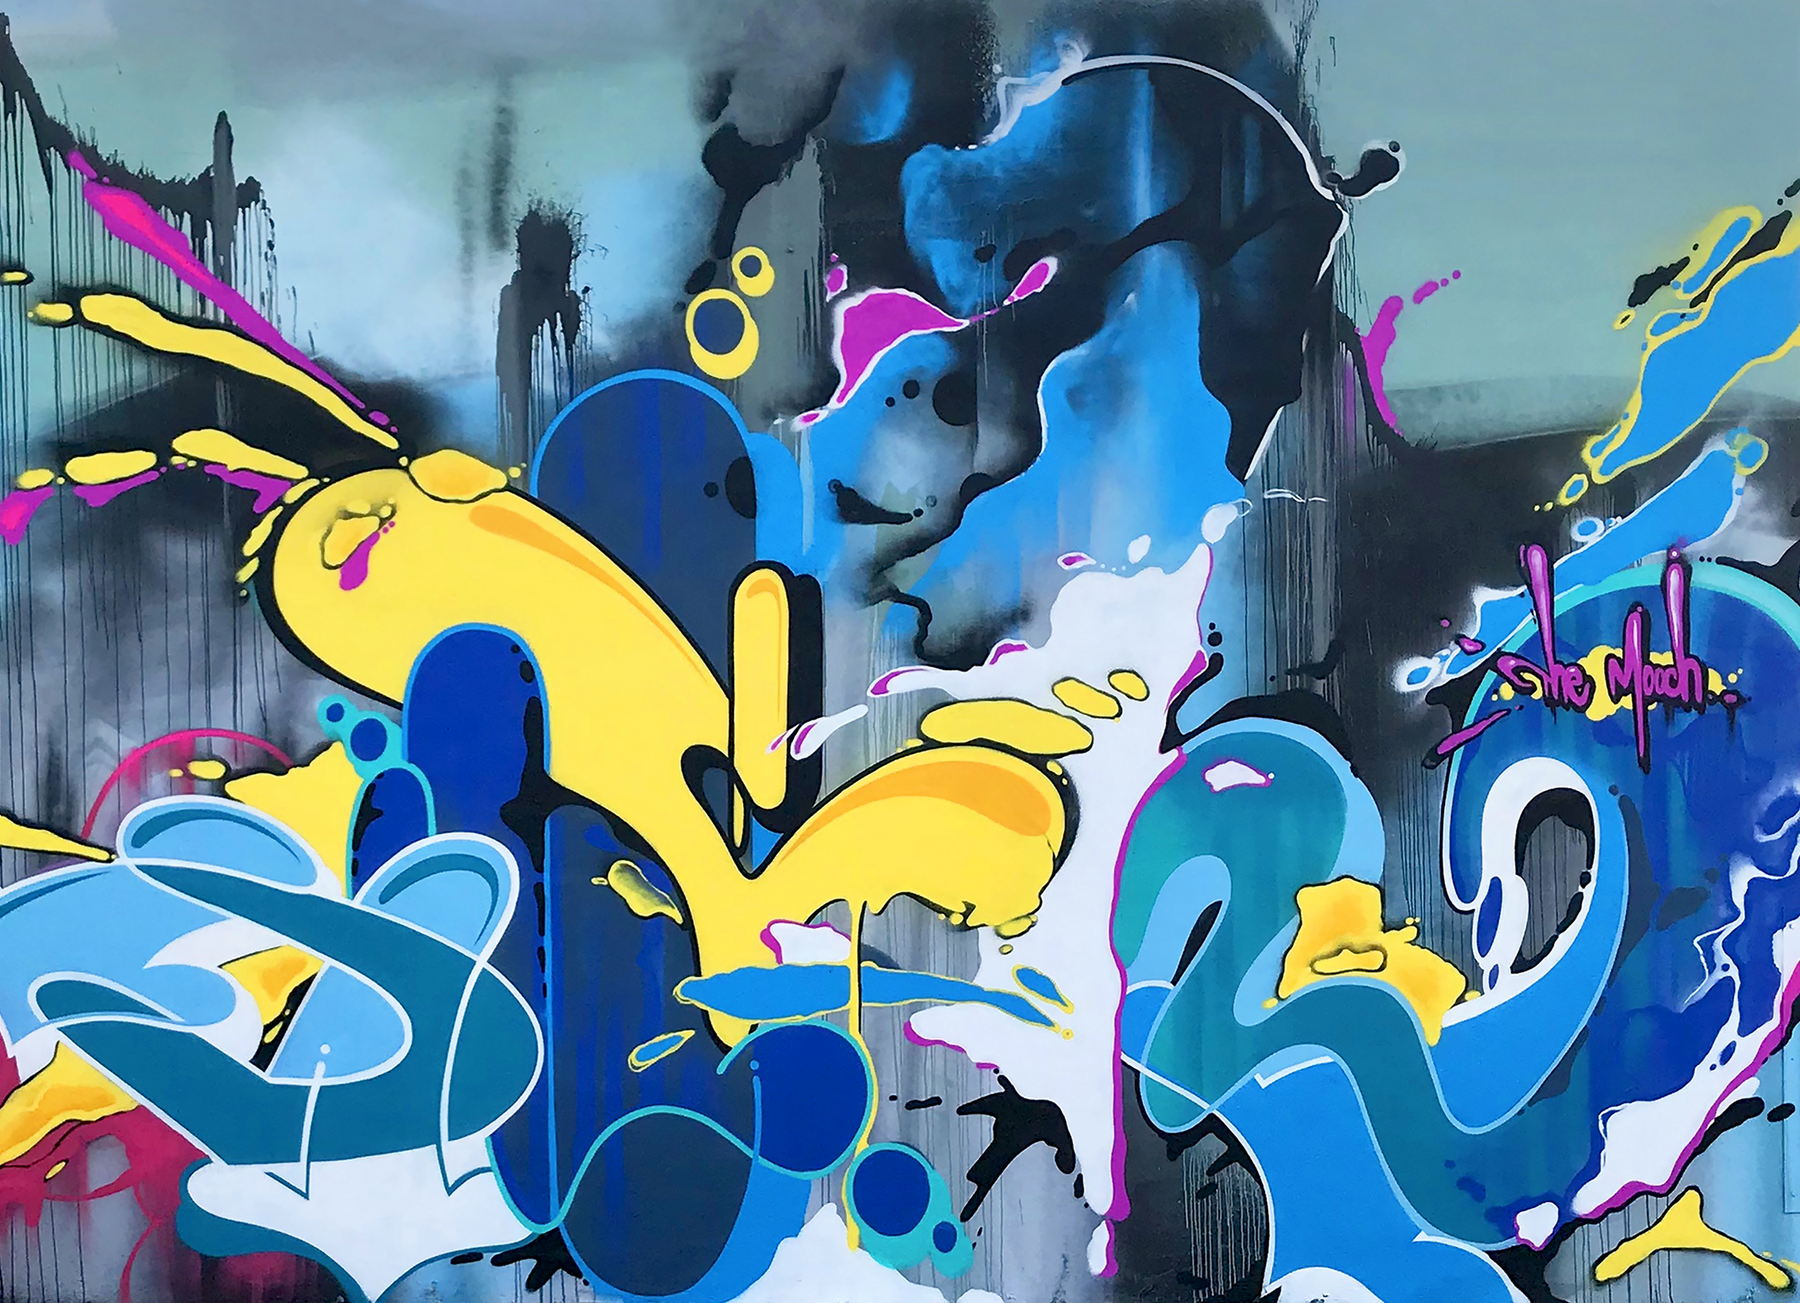 Big Kid's NYC Graffiti - Limited Edition Patterns - 2.0 by CROSSKIX - Sportsman Gear